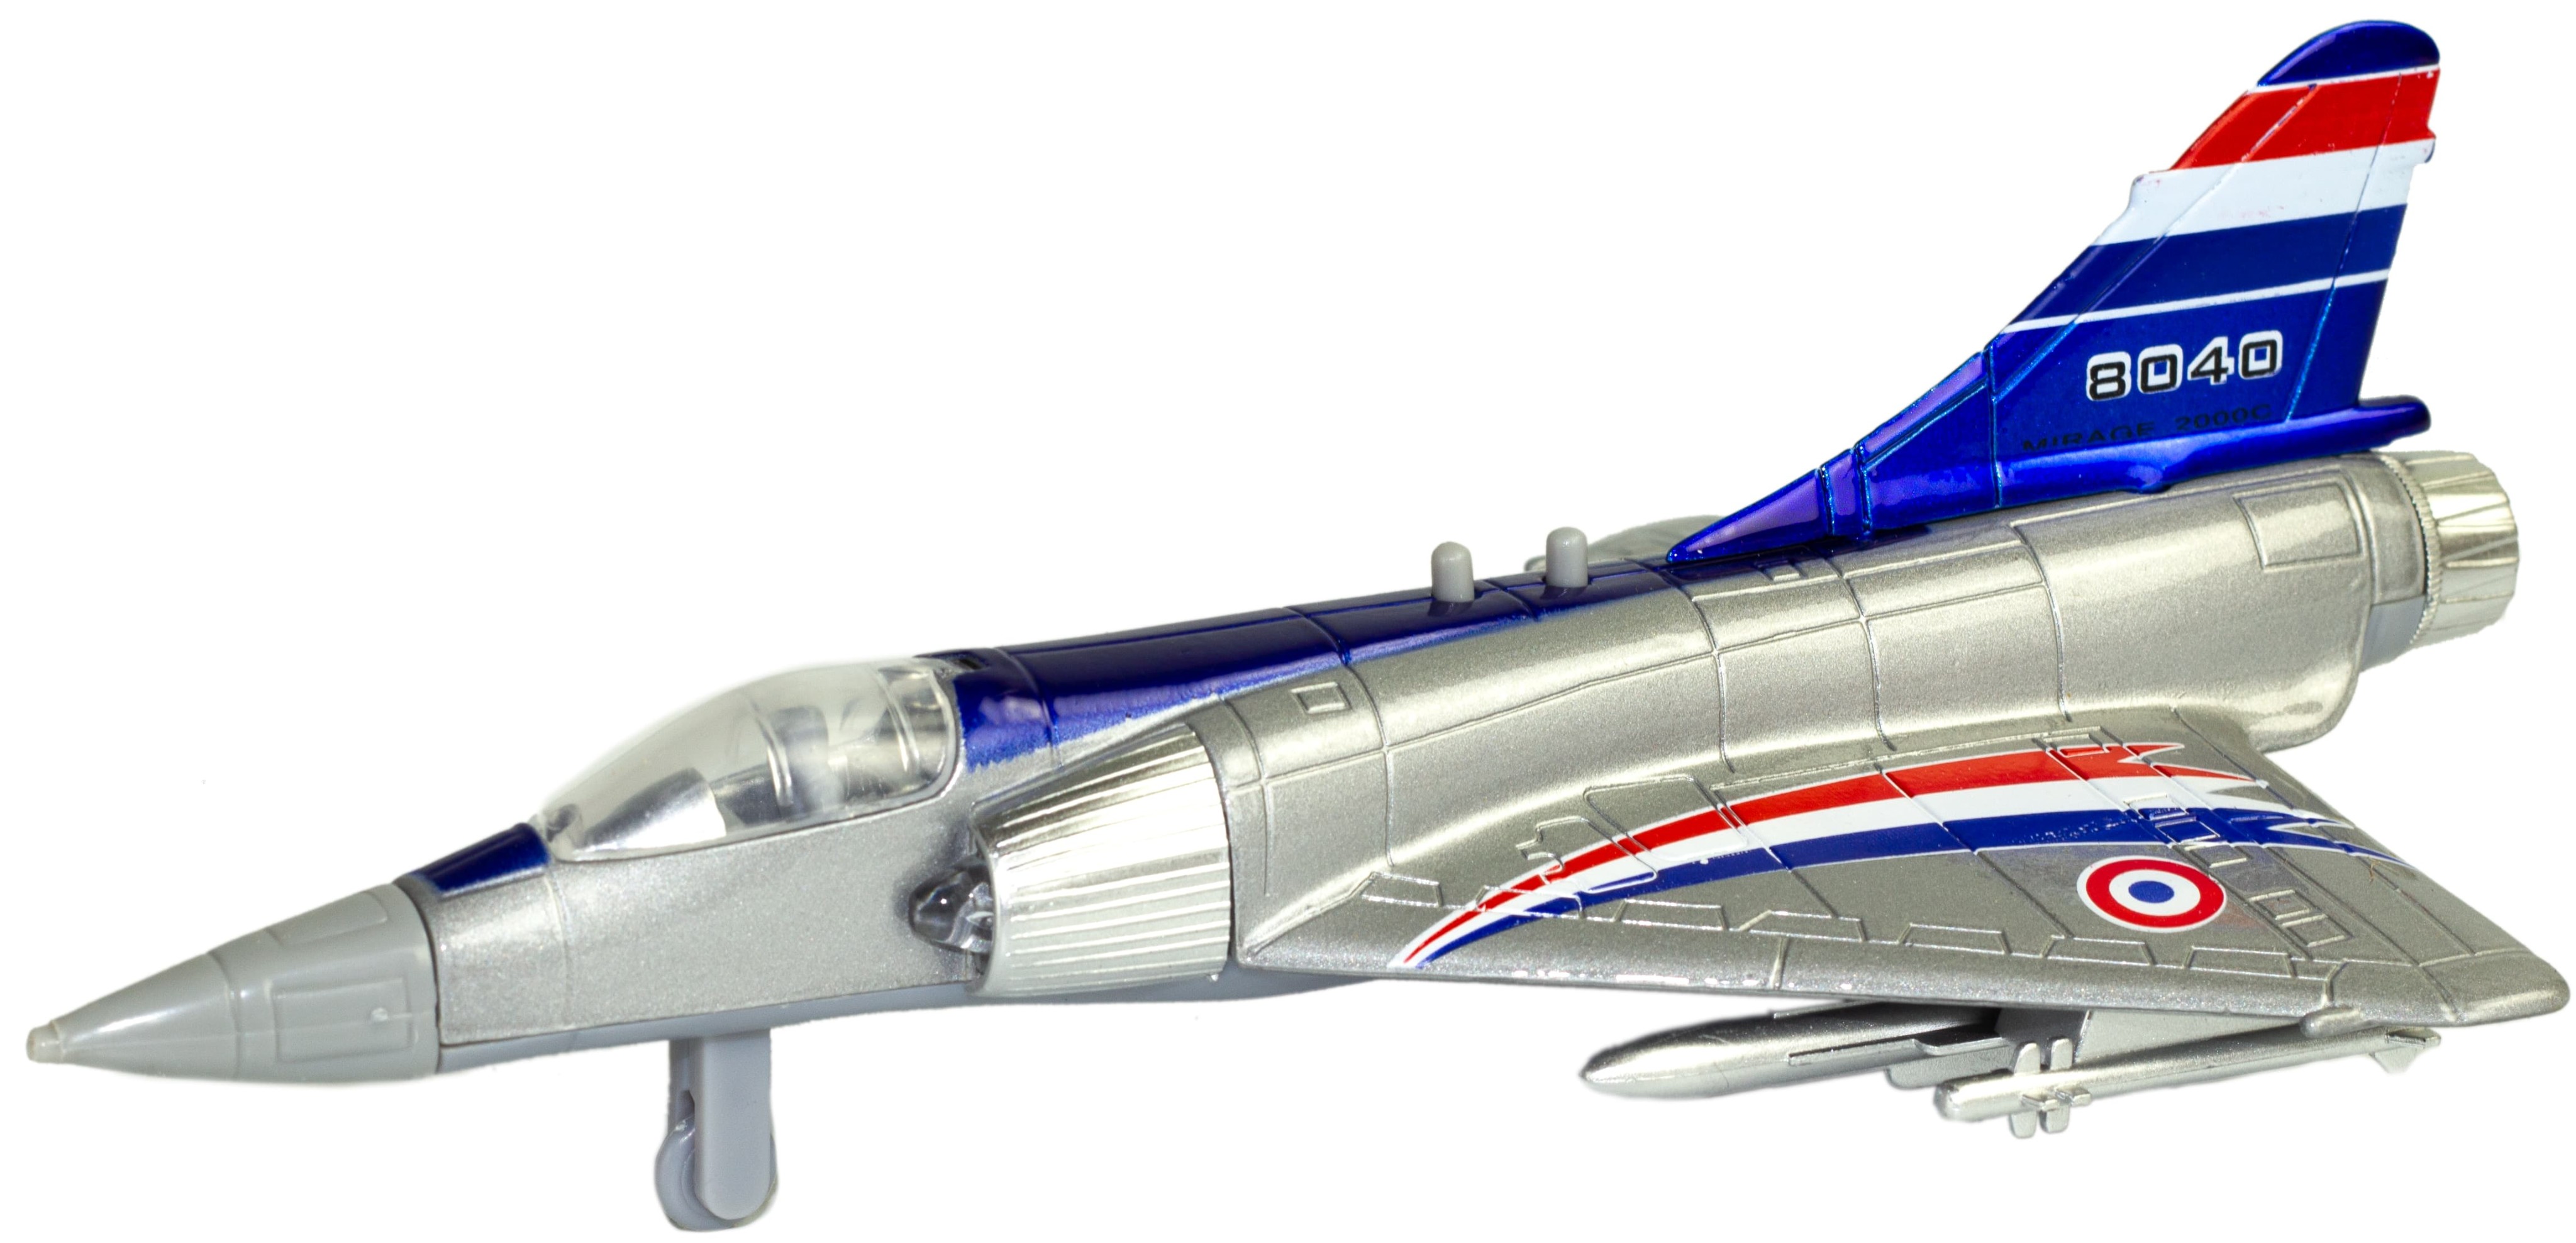 Металлический военный самолет «Sonic Mirage» 19.5 см. 8040, инерционный, свет, звук / Микс